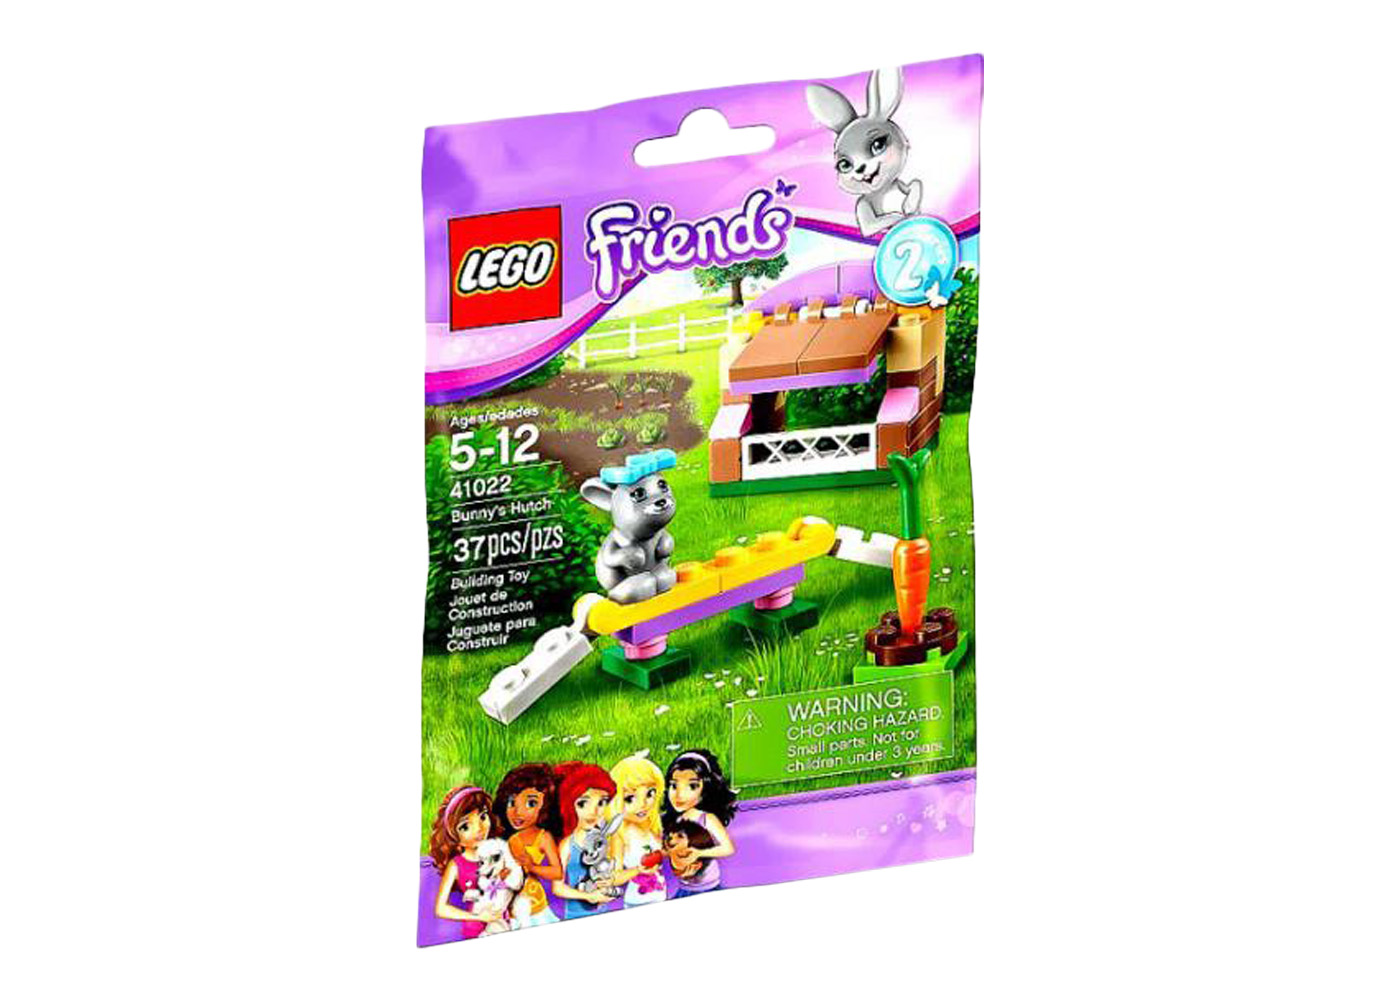 New Lego Friends Bunny s Hutch 41022  Pet rabbit  series 2 No longer sold 